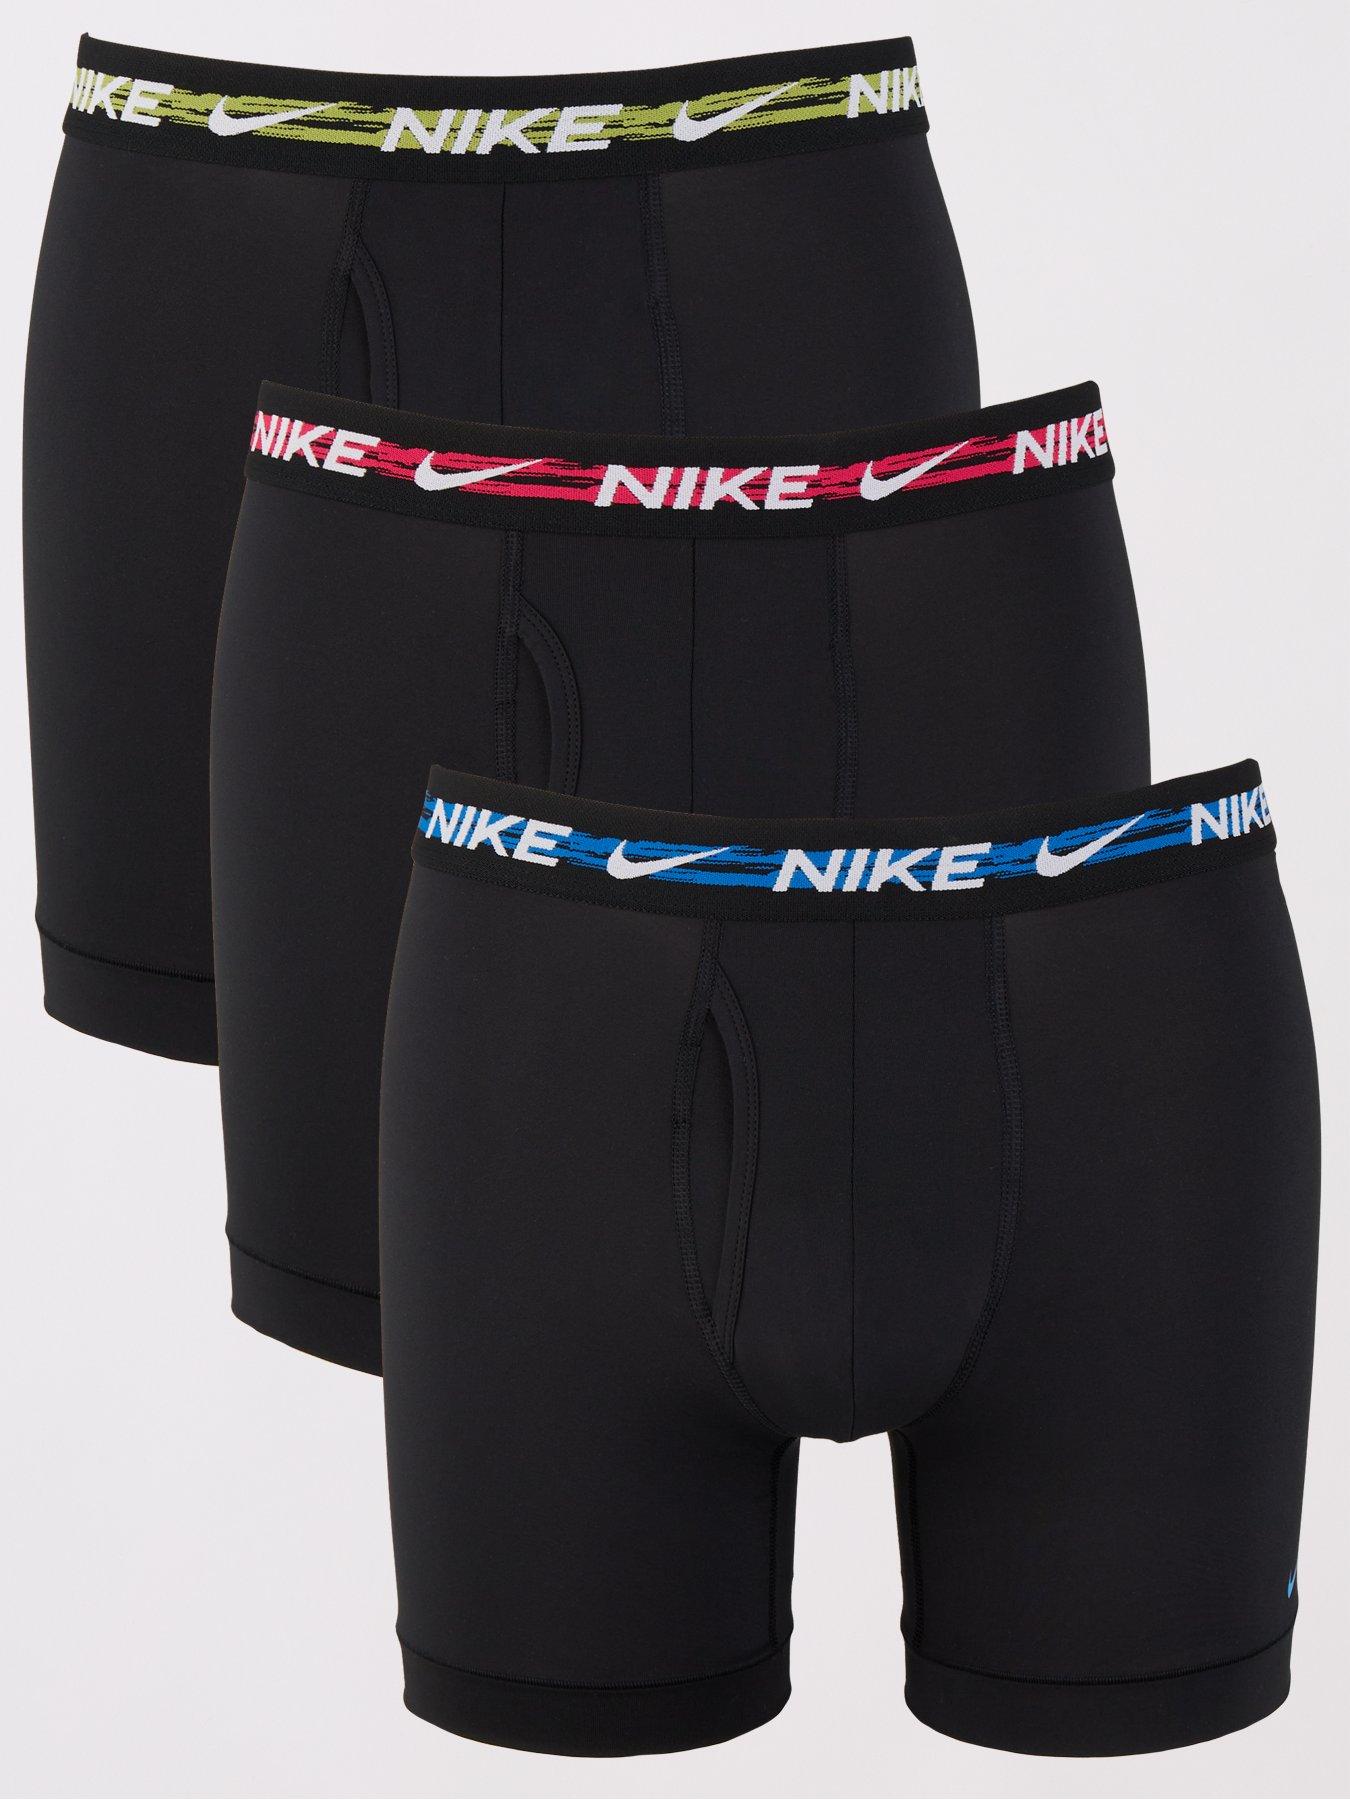 Nike, Underwear & Socks